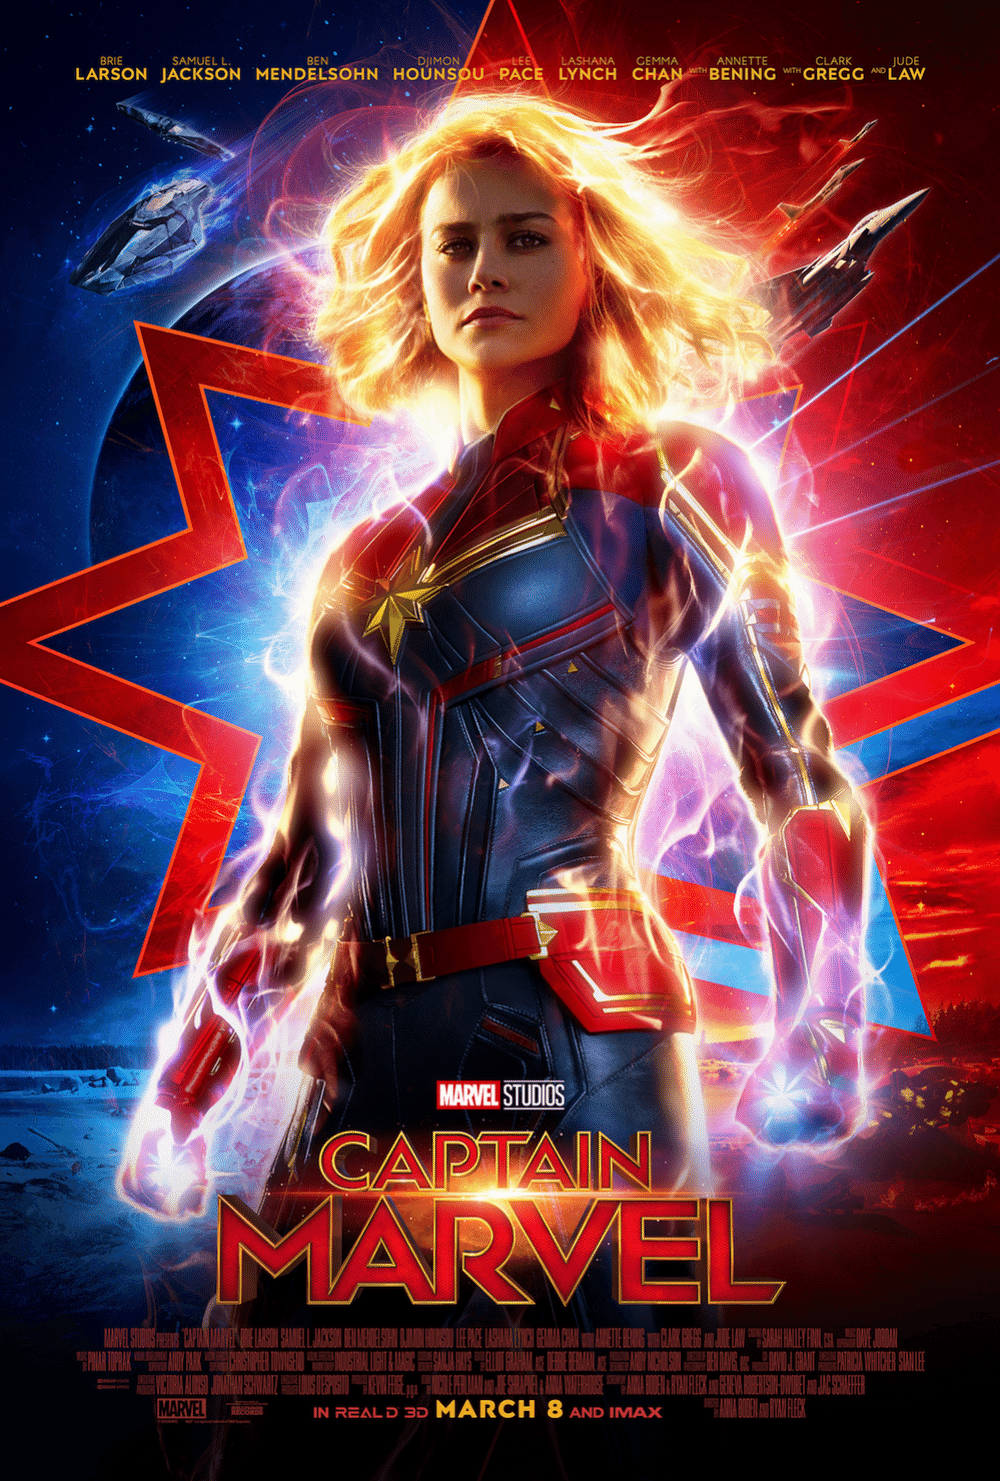 Capitã Marvel lidera bilheteria mundial em seu primeiro fim de semana -  10/03/2019 - UOL Entretenimento